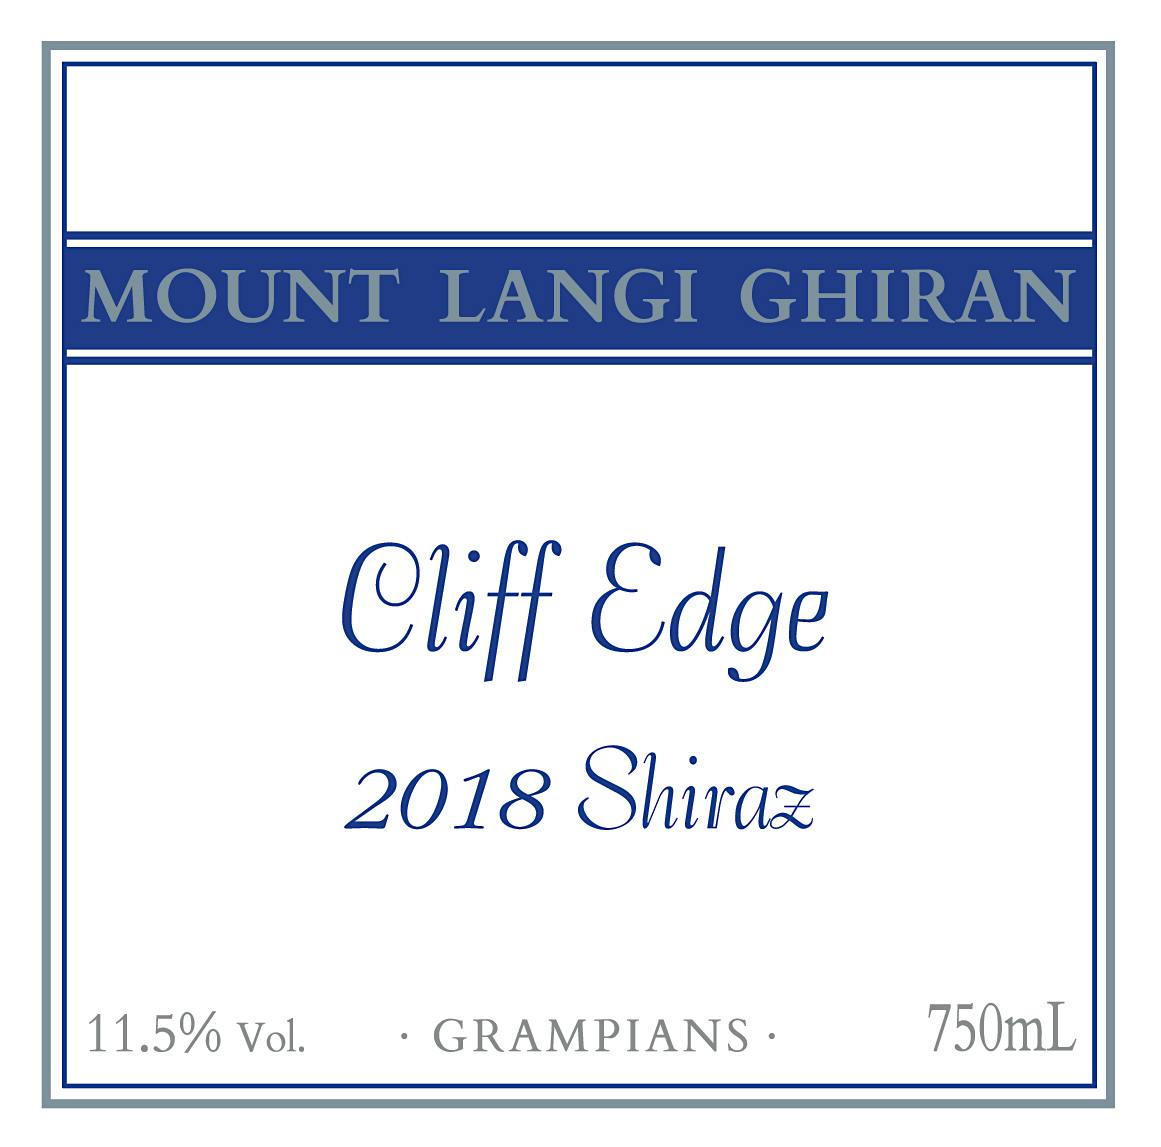 Label for Mount Langi Ghiran